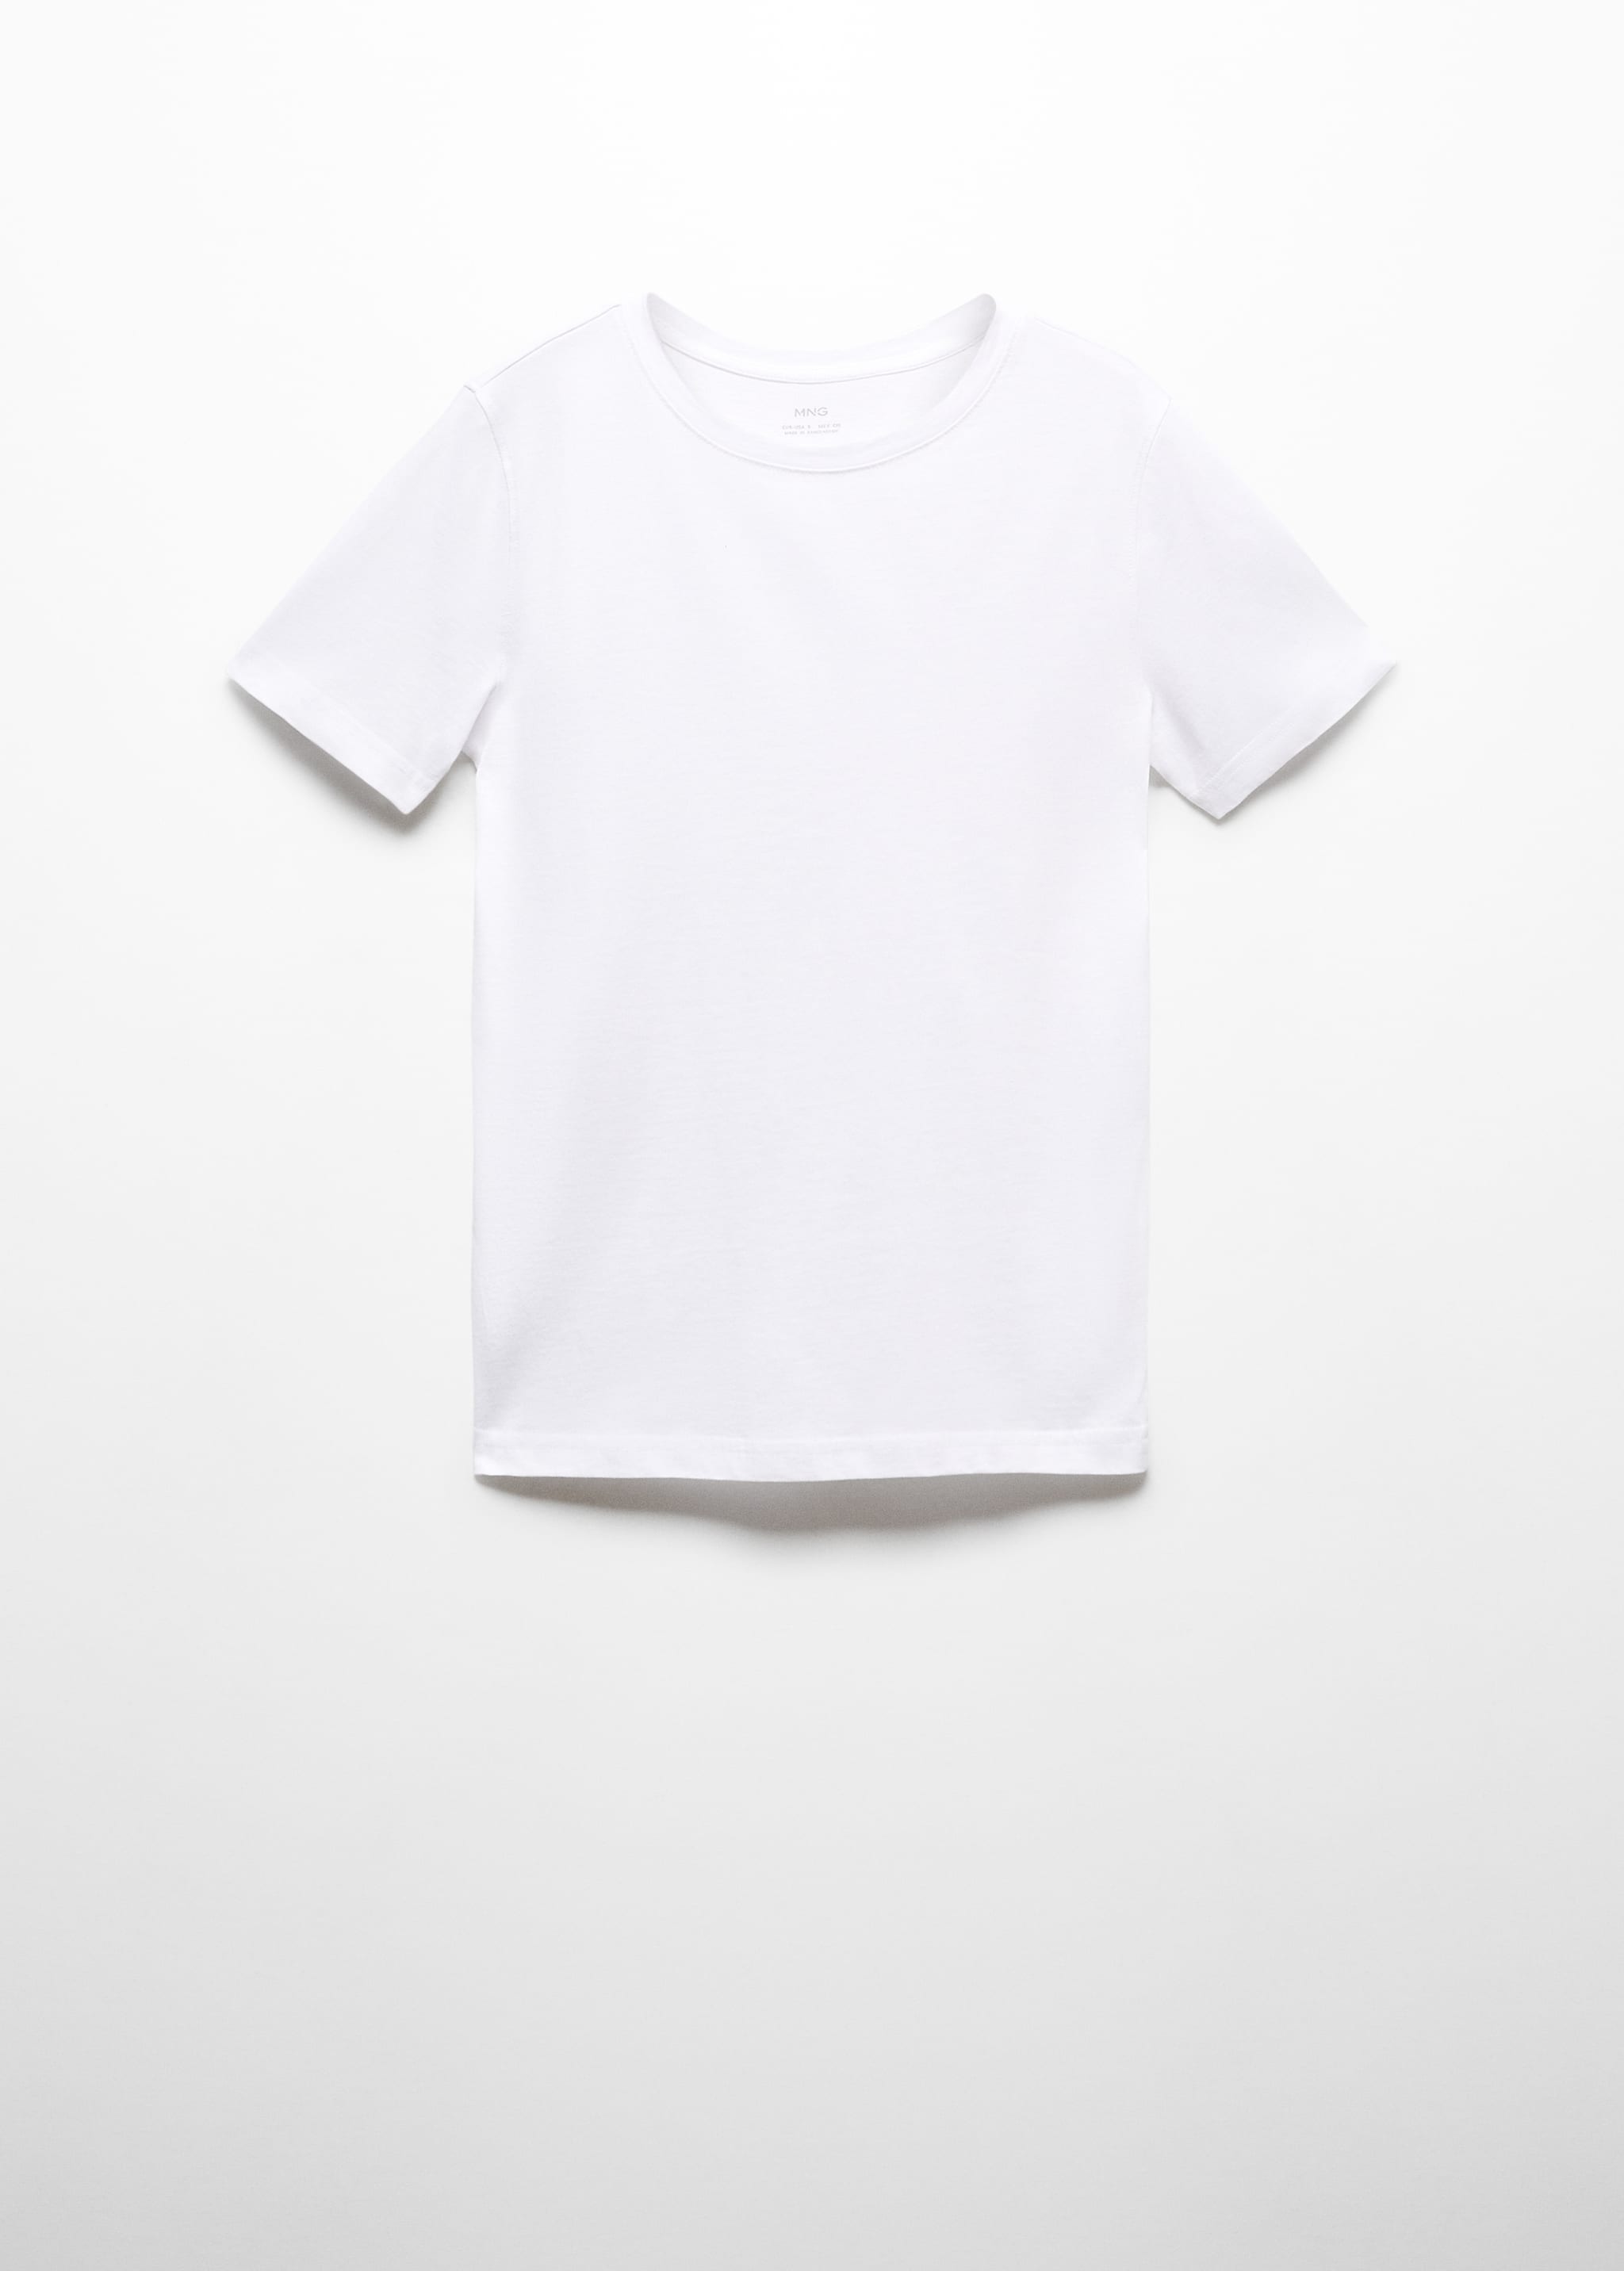 T-shirt de 100% algodão - Artigo sem modelo